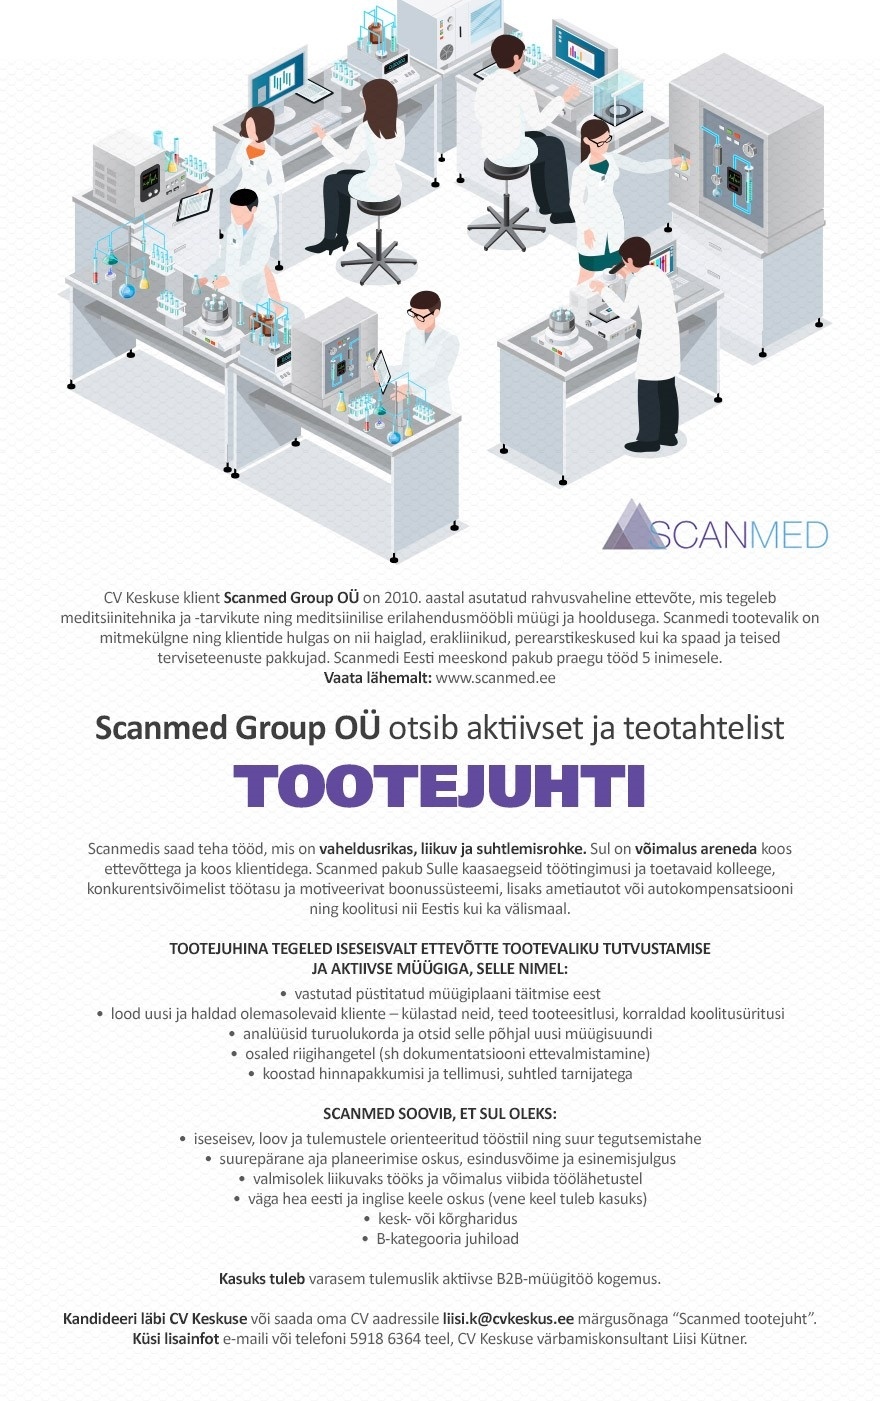 Scanmed Group OÜ Meditsiinilise erilahendusmööbli tootejuht